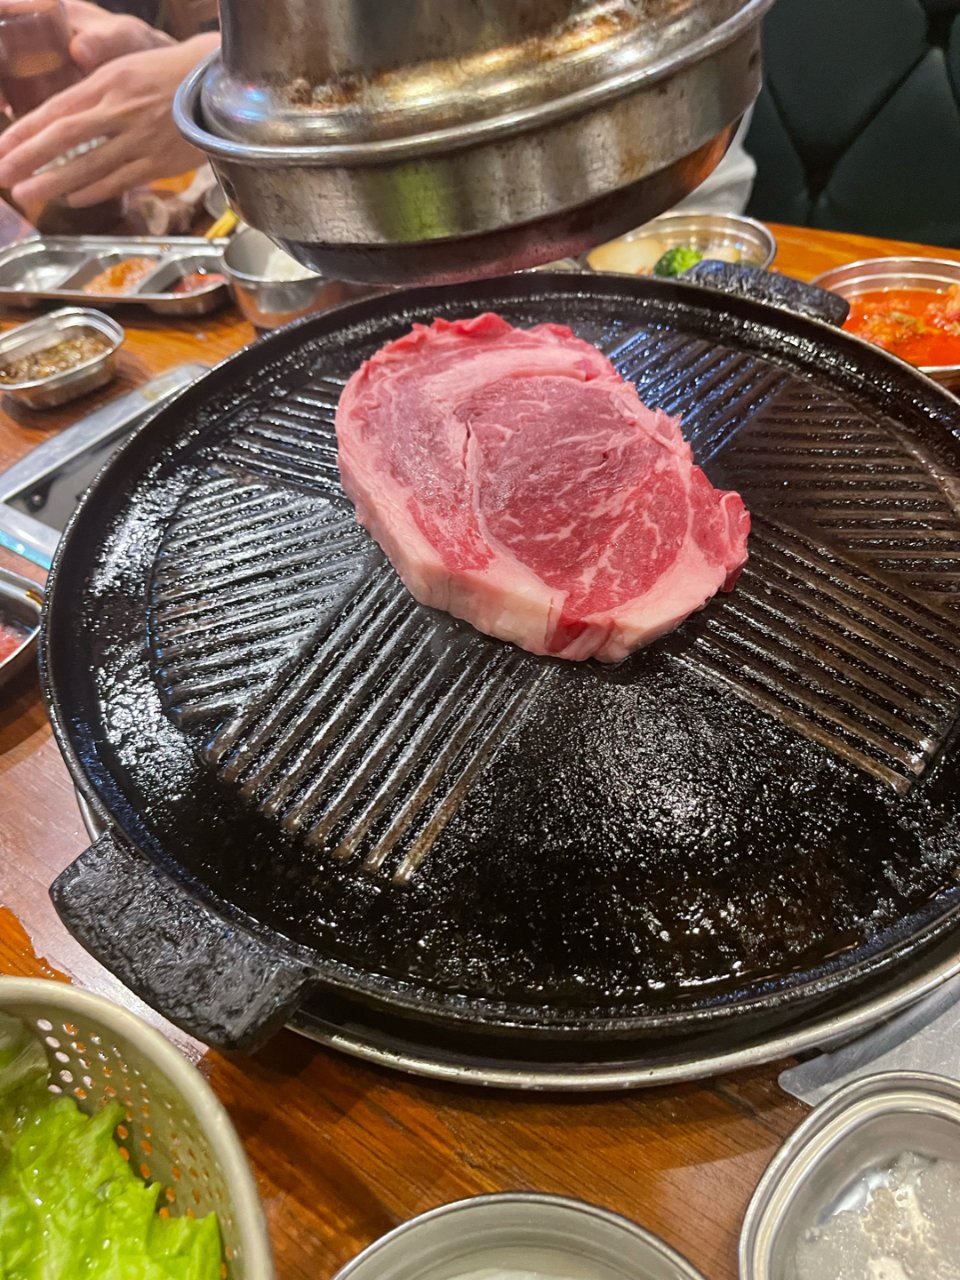 打卡韩国烤肉店Jongro BBQ
...